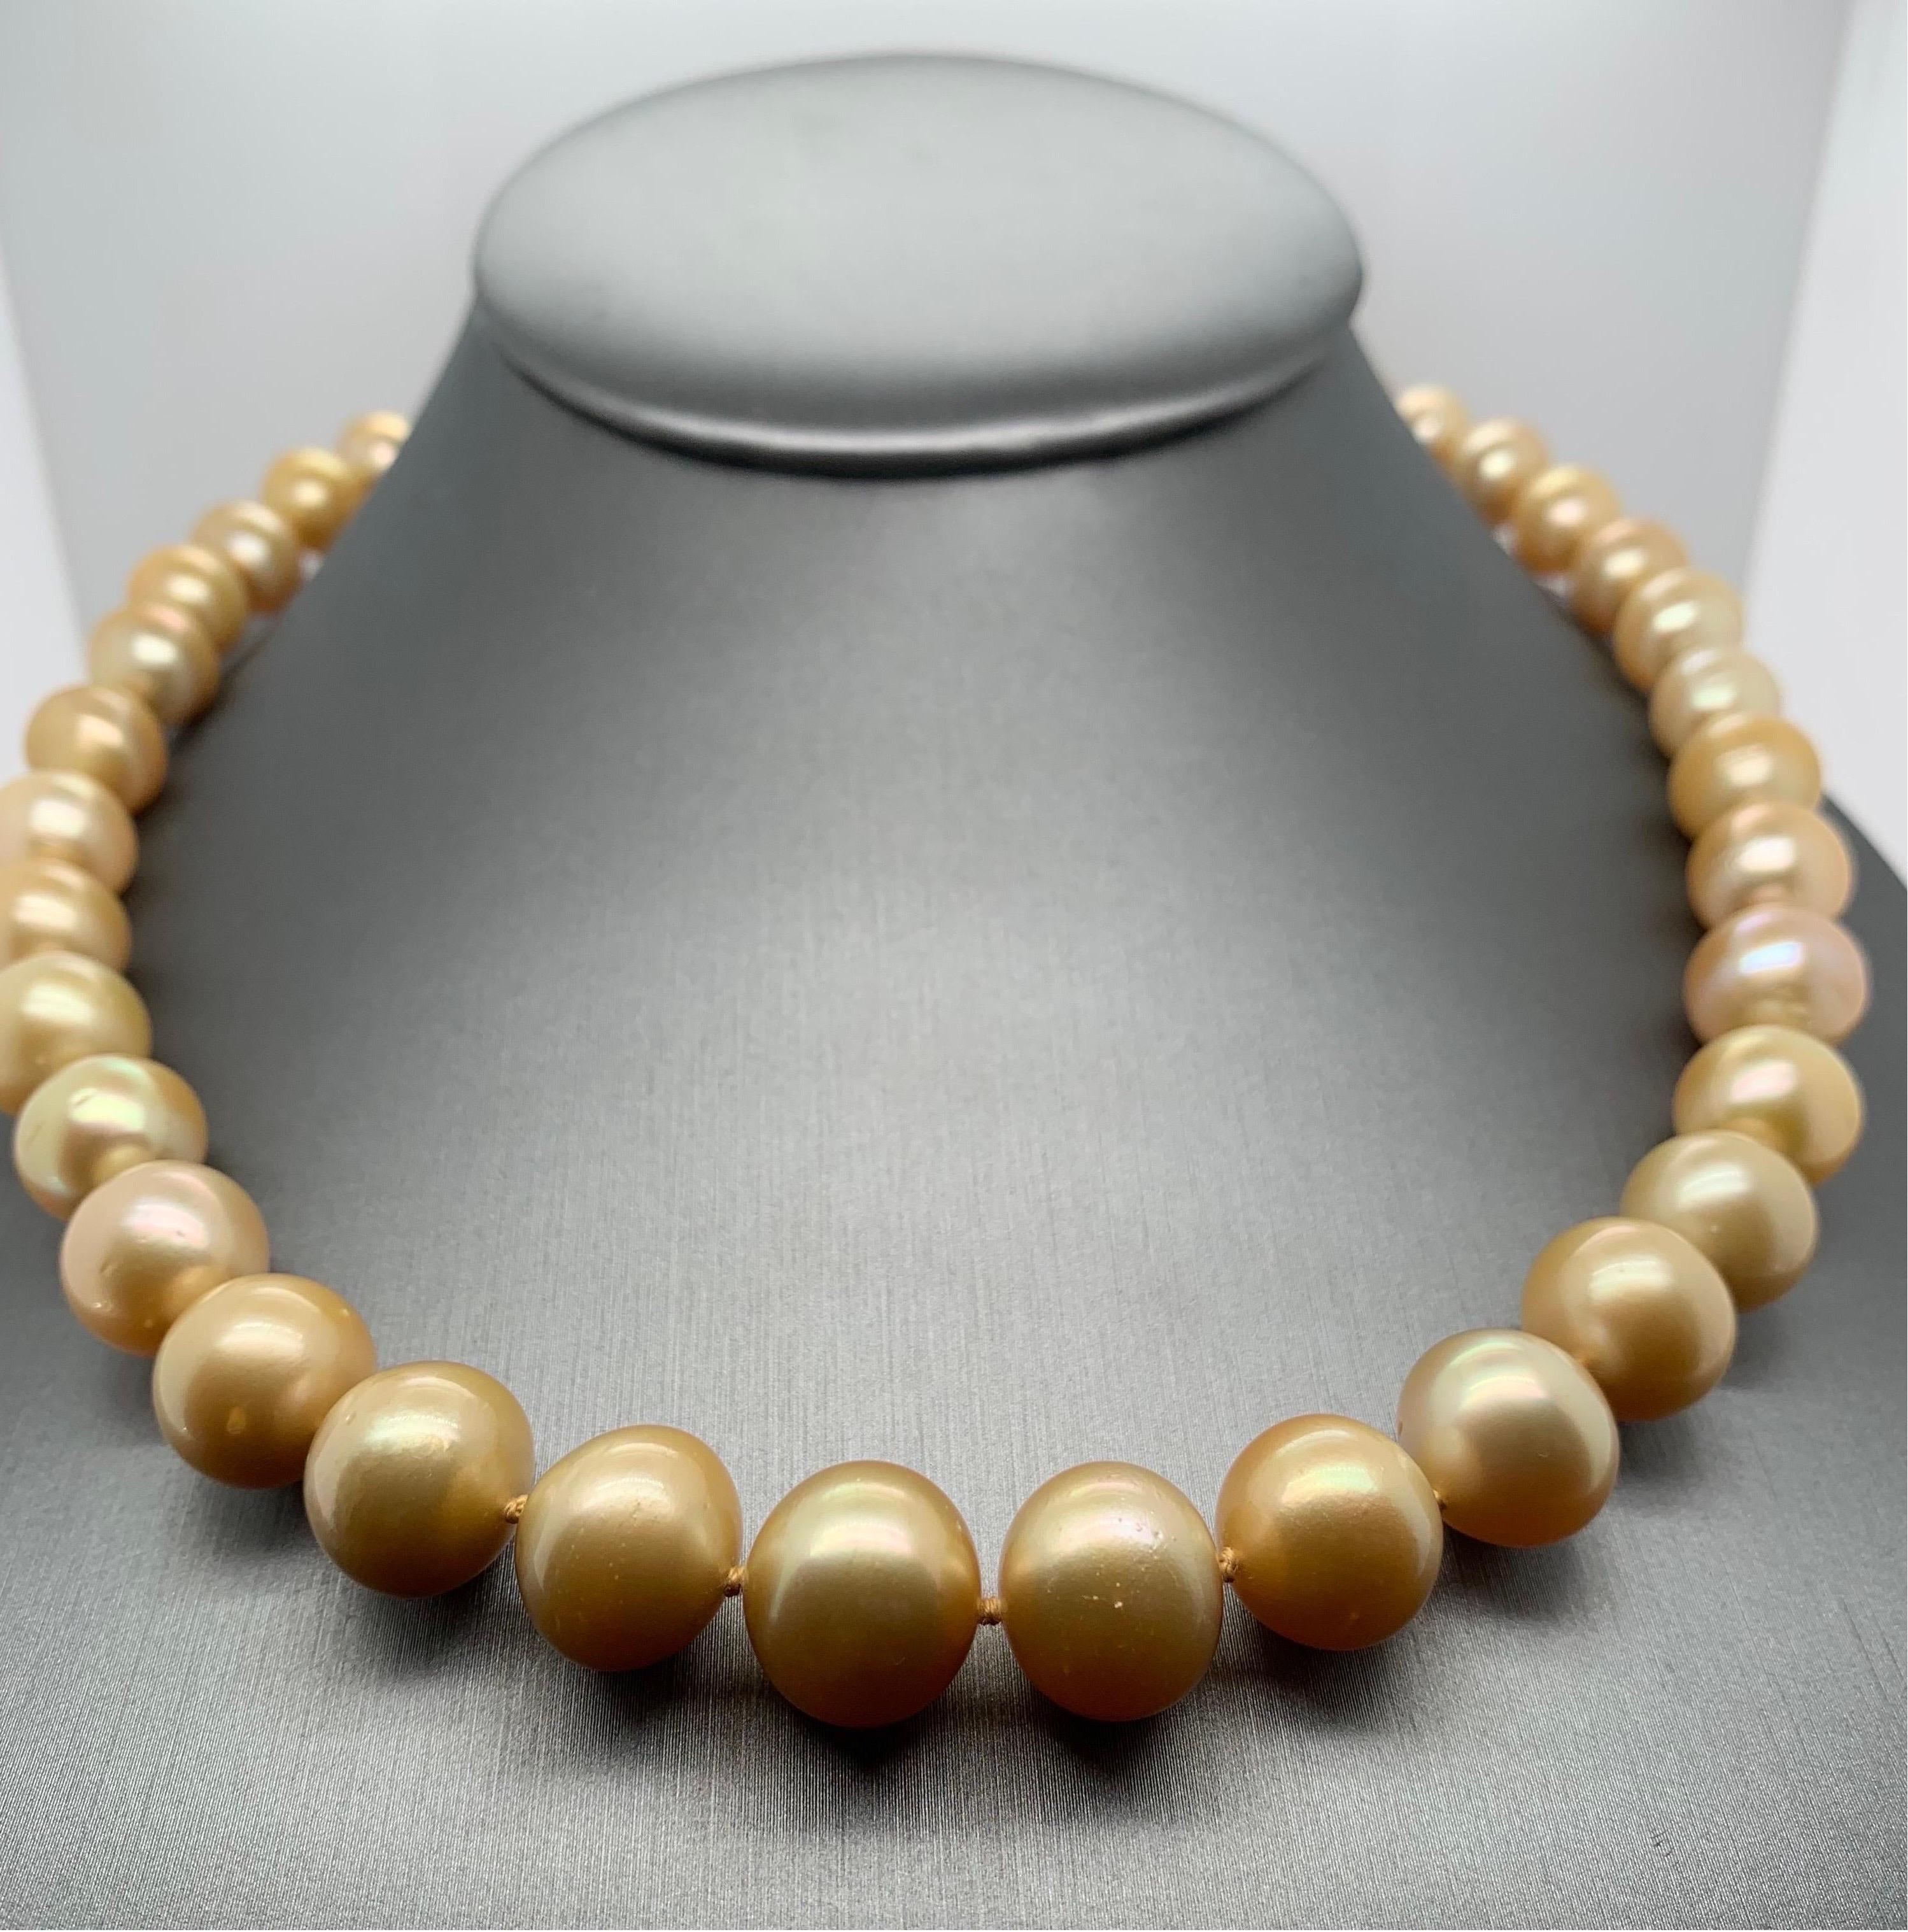 Werten Sie Ihren Look mit einer zeitlosen, abgestuften Perlenkette auf. Diese 18-19 Zoll lange Strang-Halskette ist vollständig geknotet und von Hand mit passender Seidenkordel aufgefädelt. Die Kette besteht aus 39 goldenen Südseeperlen mit einer